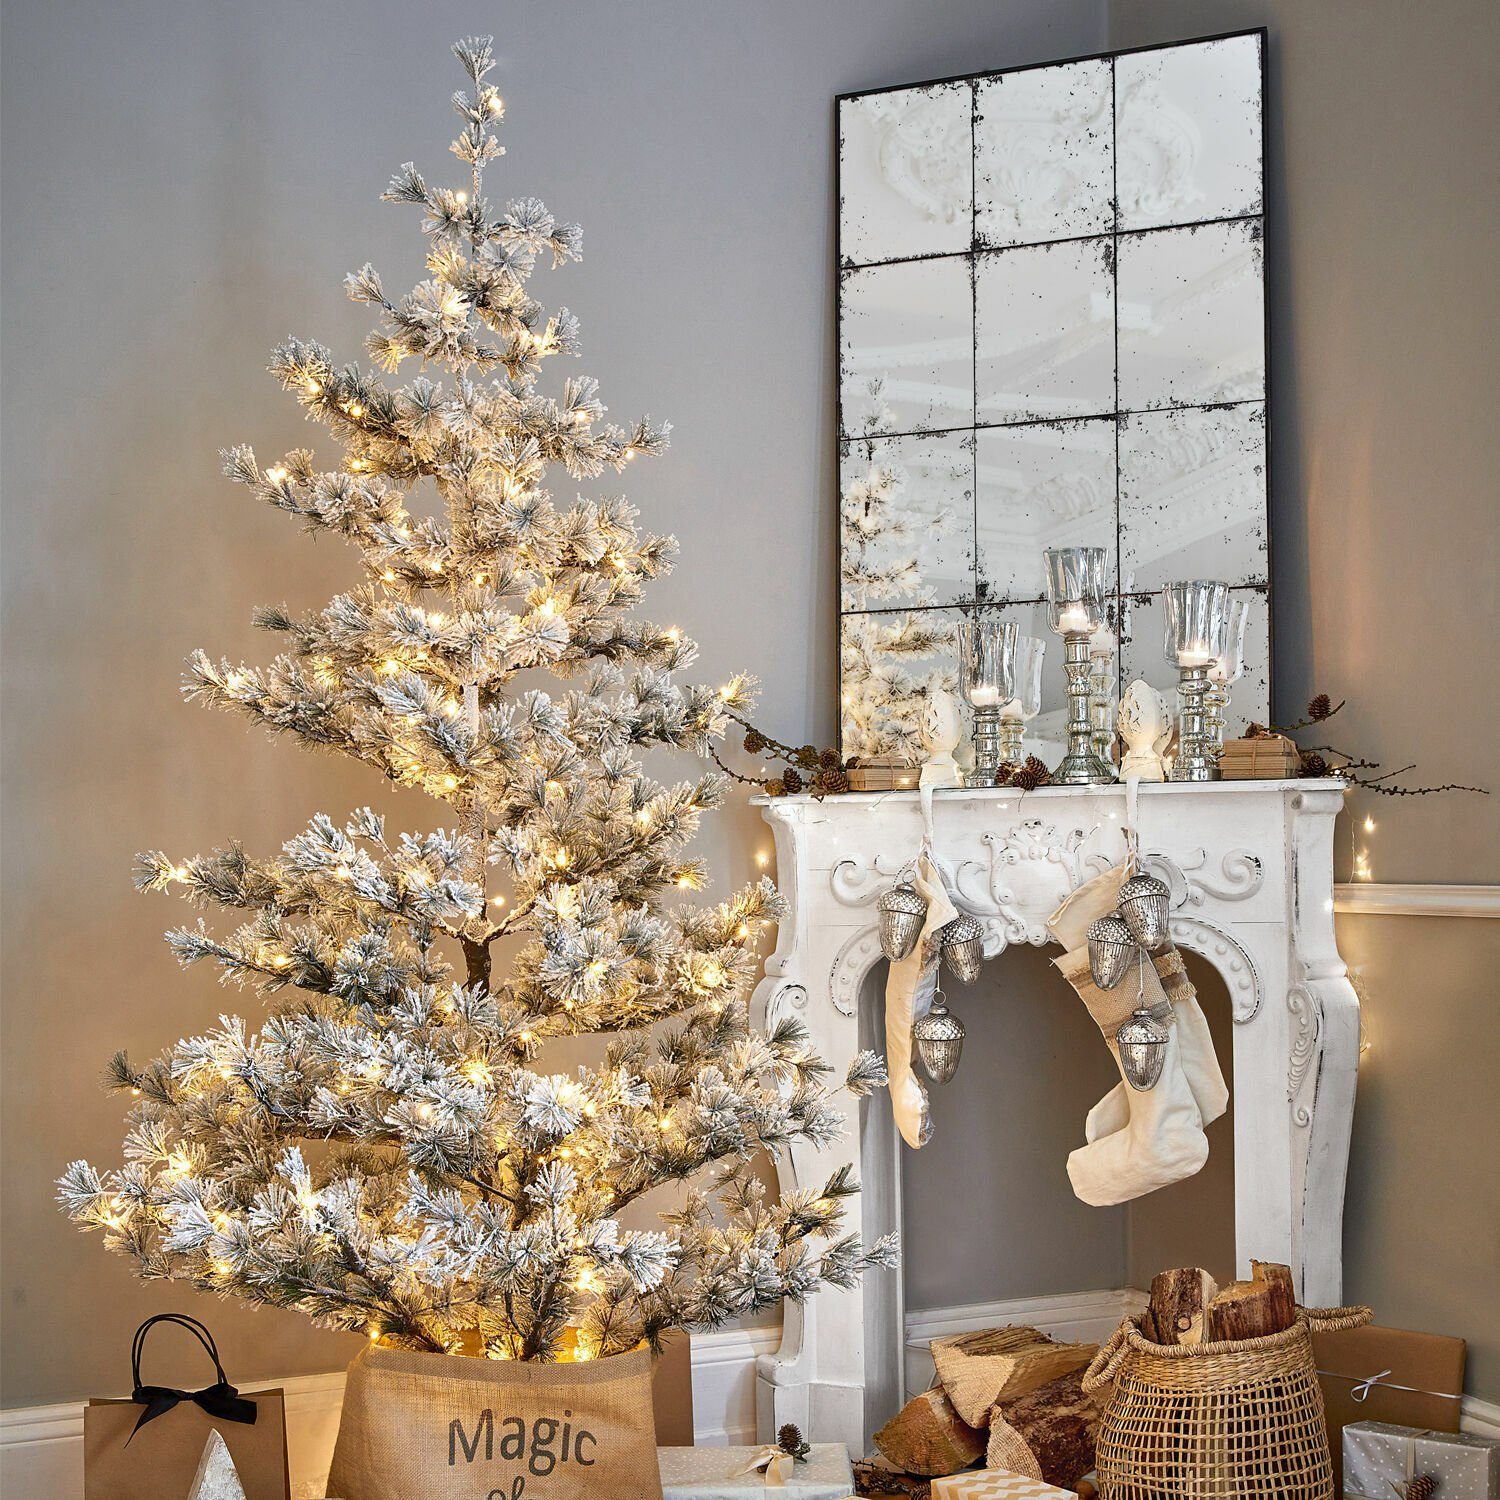 Mirabeau Künstlicher Weihnachtsbaum Sapi grün/weiß Weihnachtsbaum